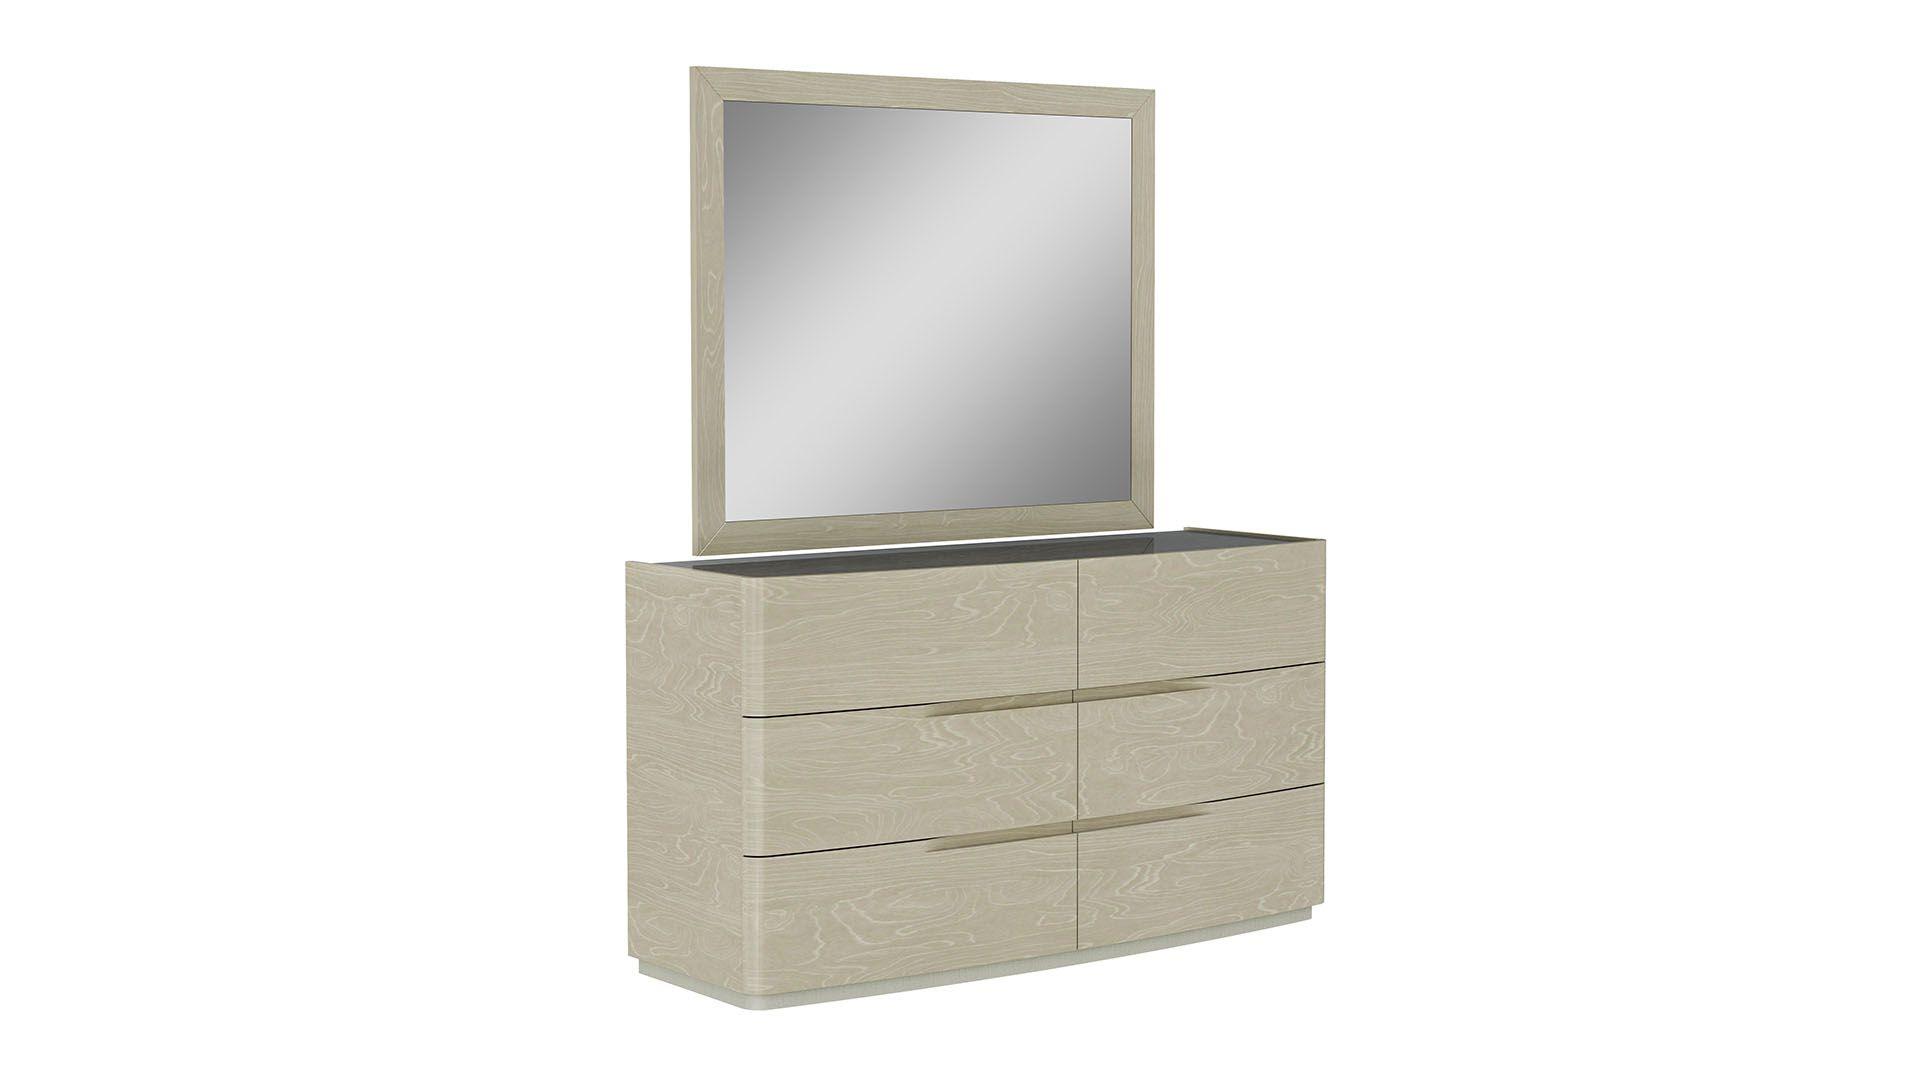 

                    
American Eagle Furniture P111-BED-EK Platform Bedroom Set Gray/Light Walnut PU Purchase 
